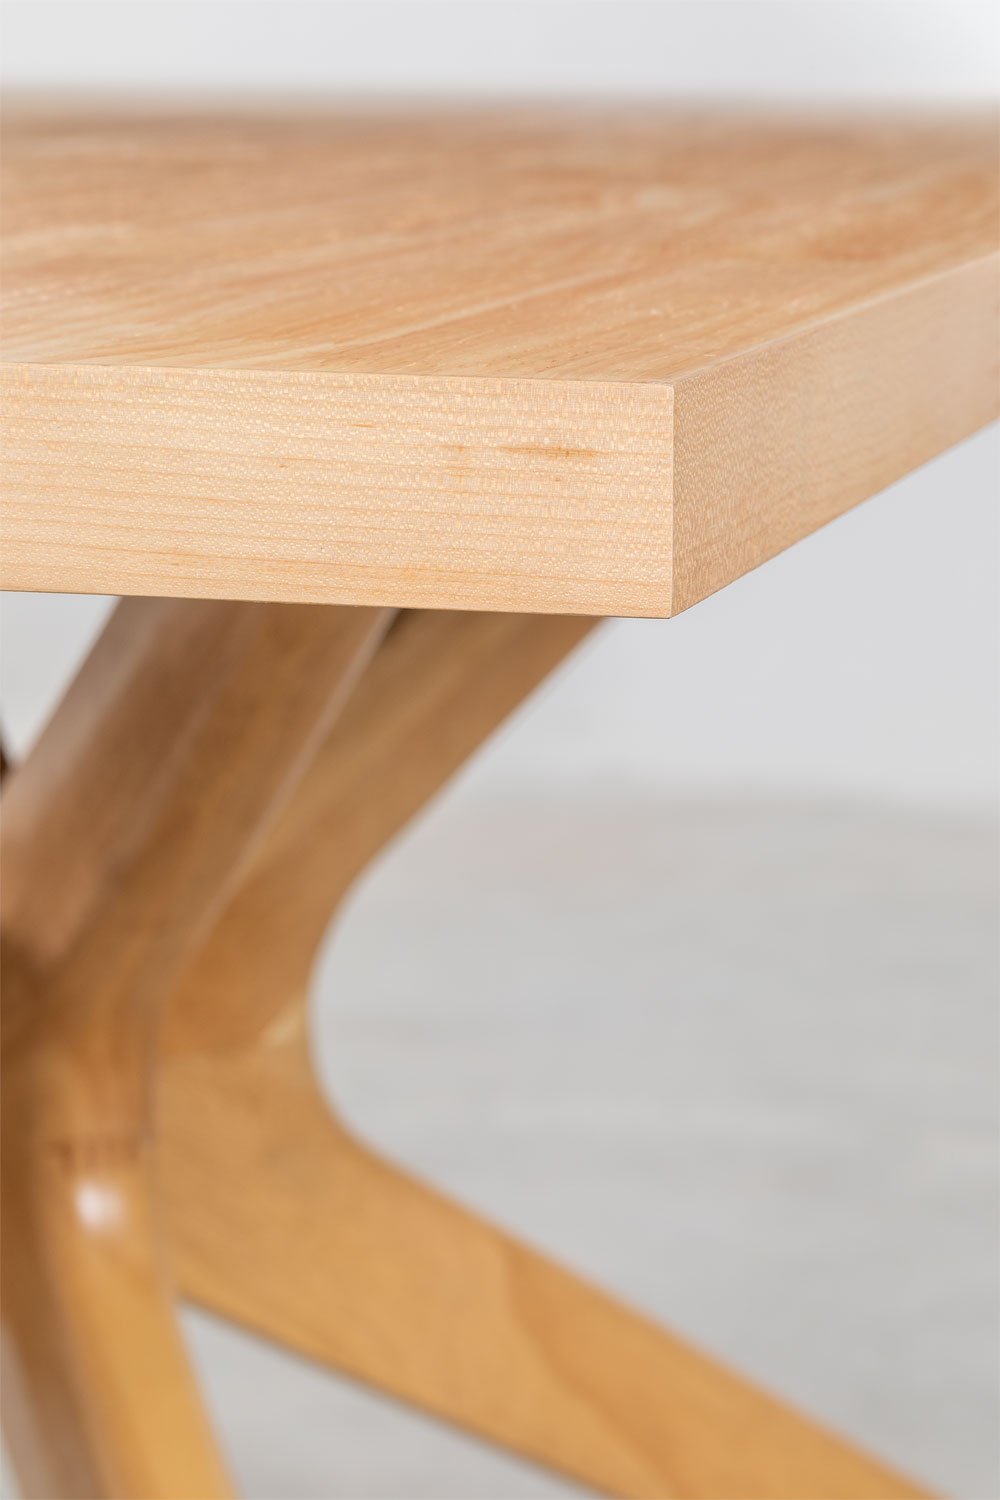 Set Tavolo da Pranzo Rettangolare in MDF (180x100 cm) Pleven e 6 Sedie con  Braccioli in Legno di Frassino e Rattan Stile Lali - SKLUM